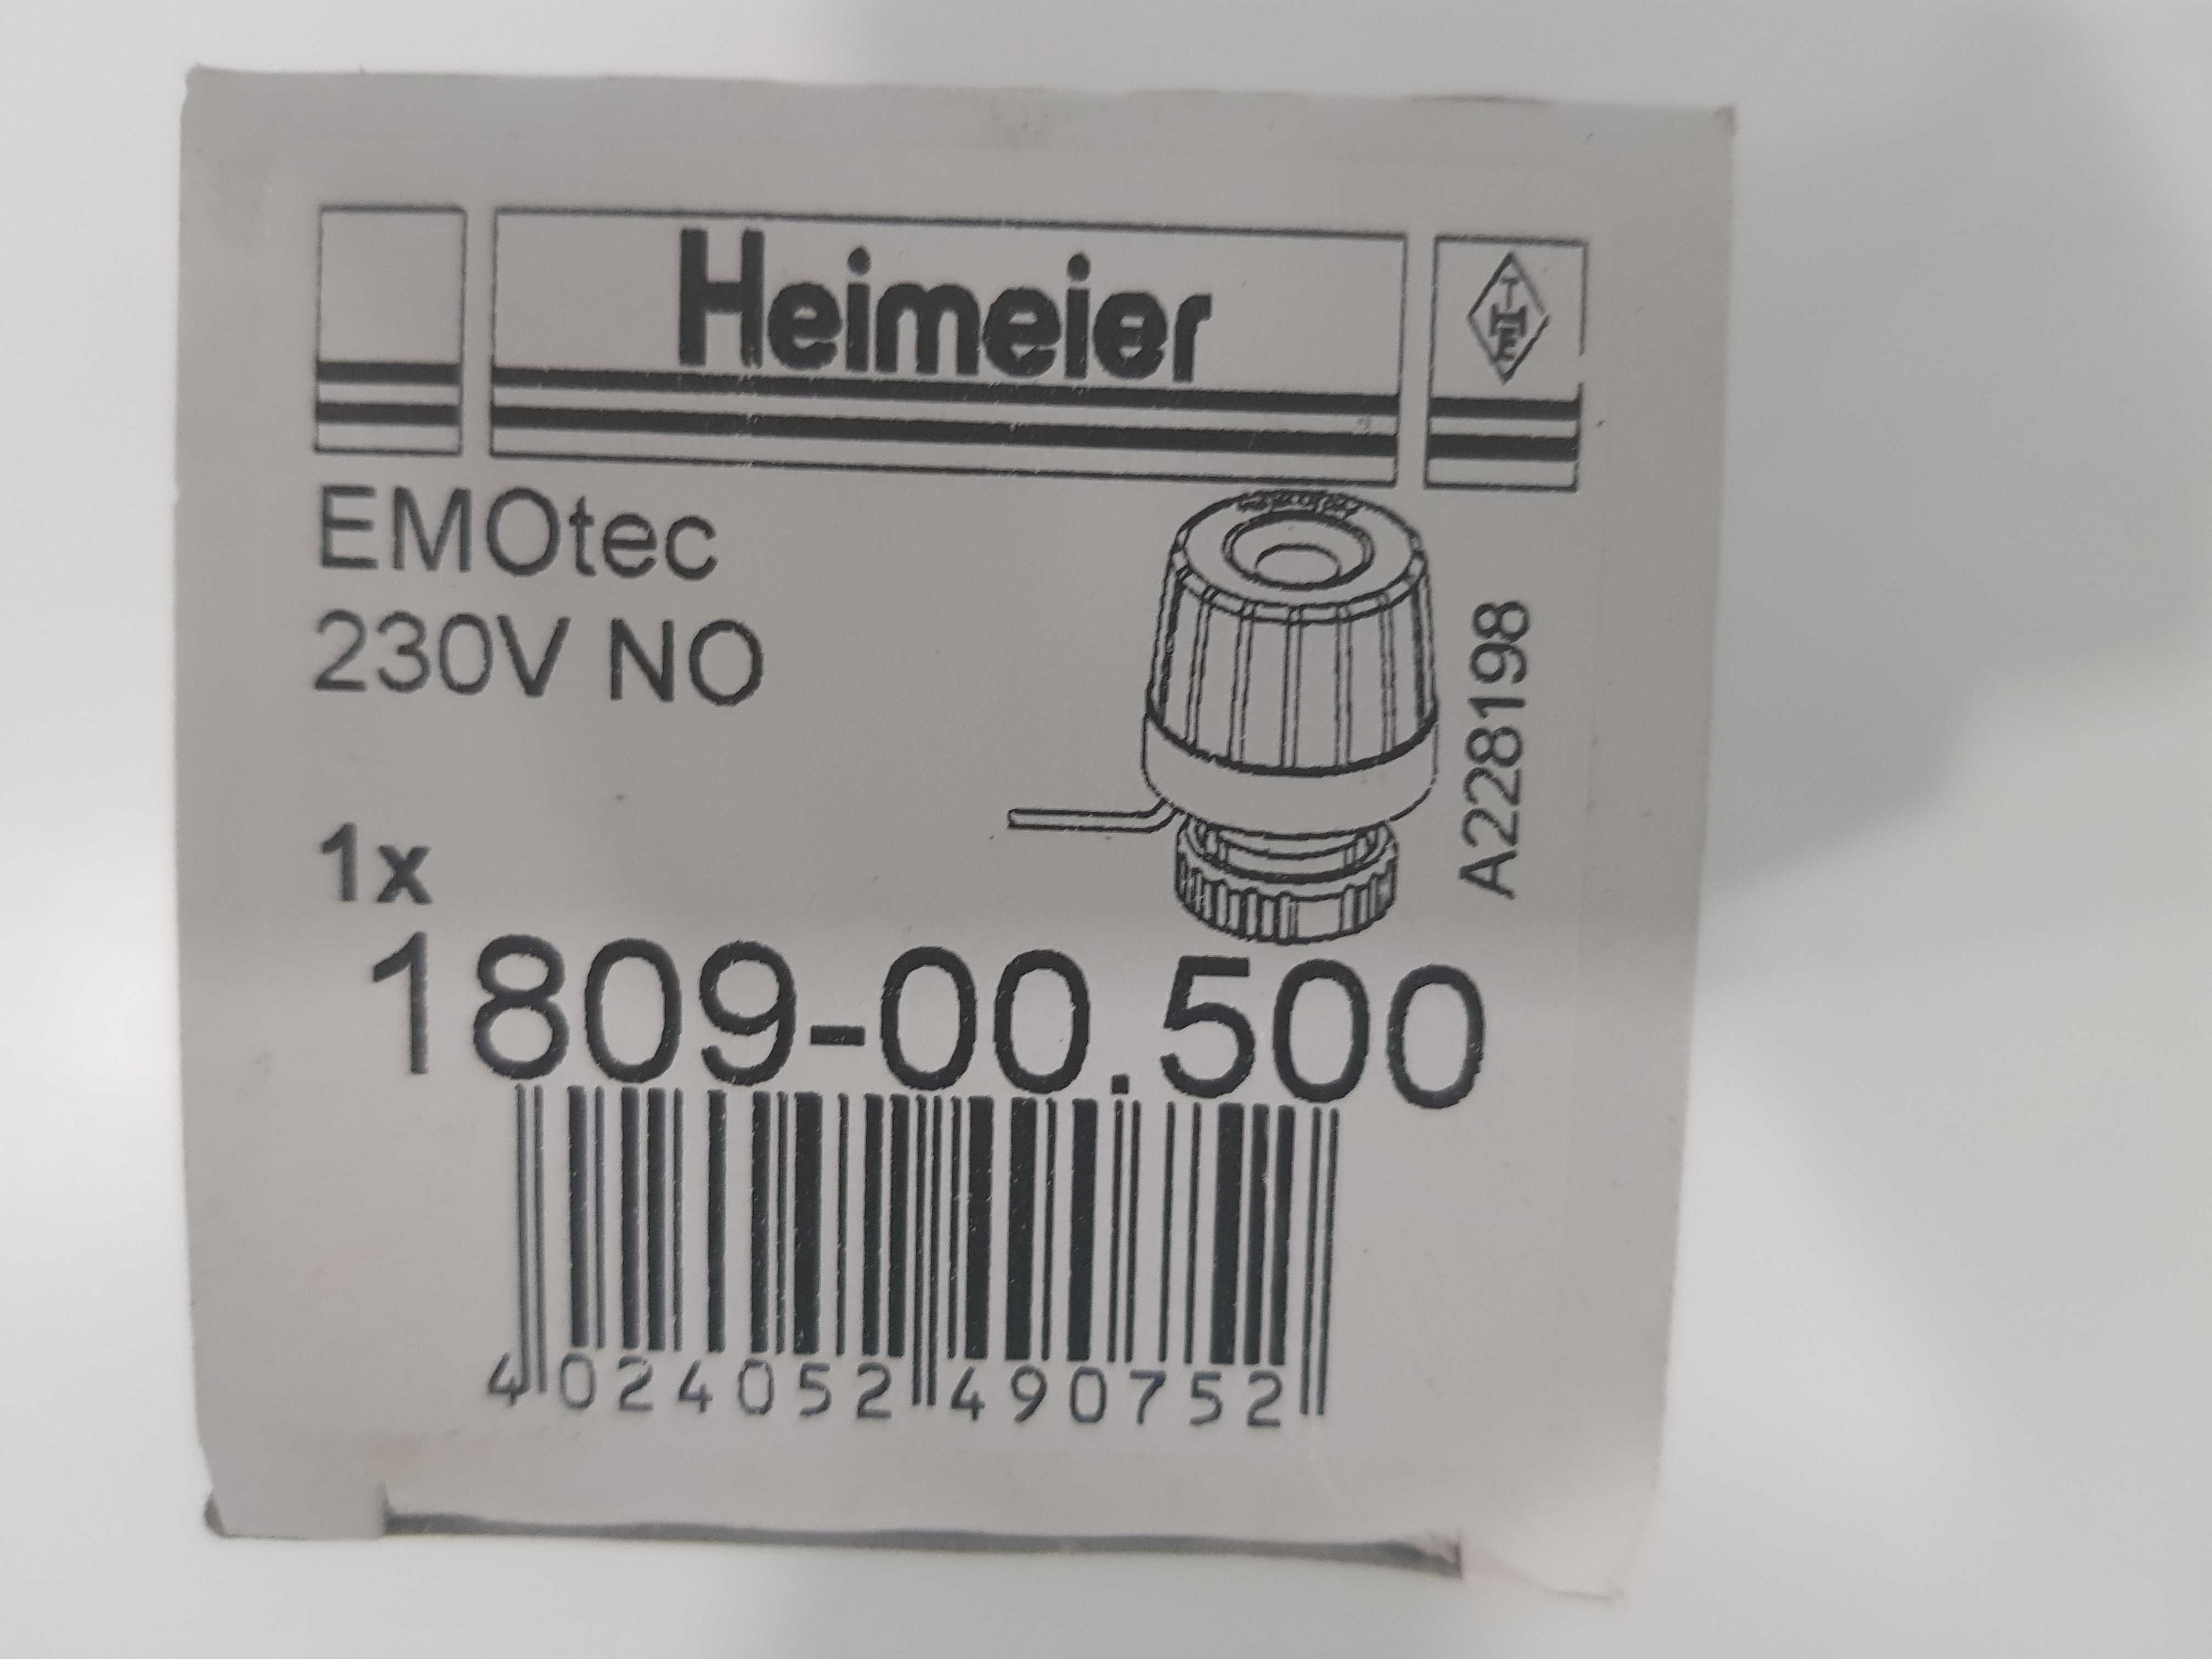 siłownik elektrotermiczny Heimeier EMOtec 230V  1809-00.500